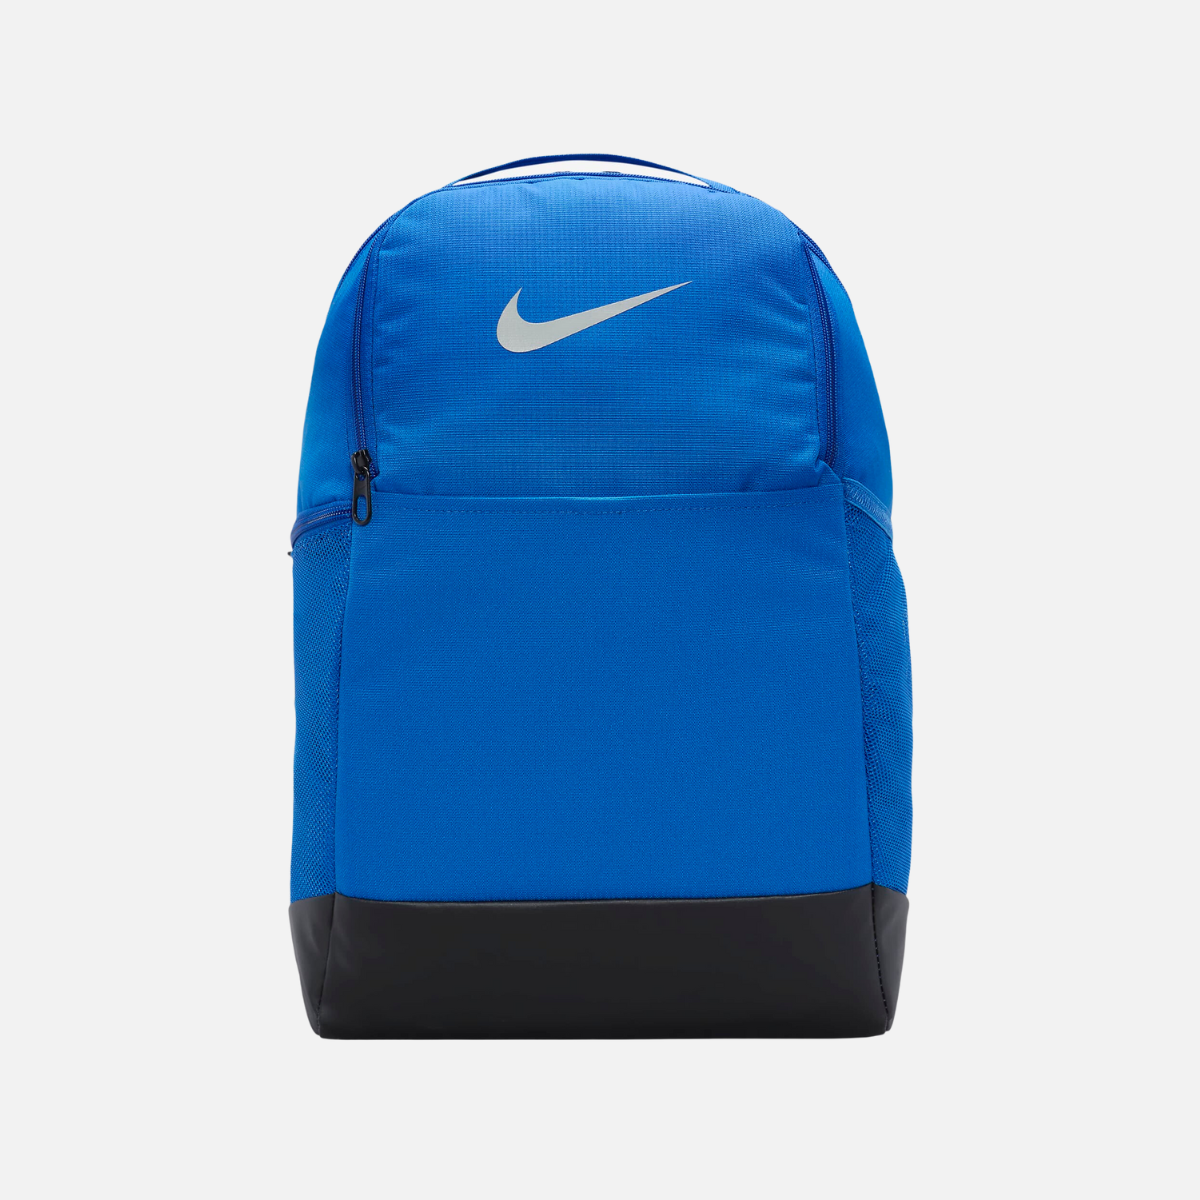 Nike Brasilia 9.5 Training Backpack (24L) -Game Royal/Black/Metallic Silver